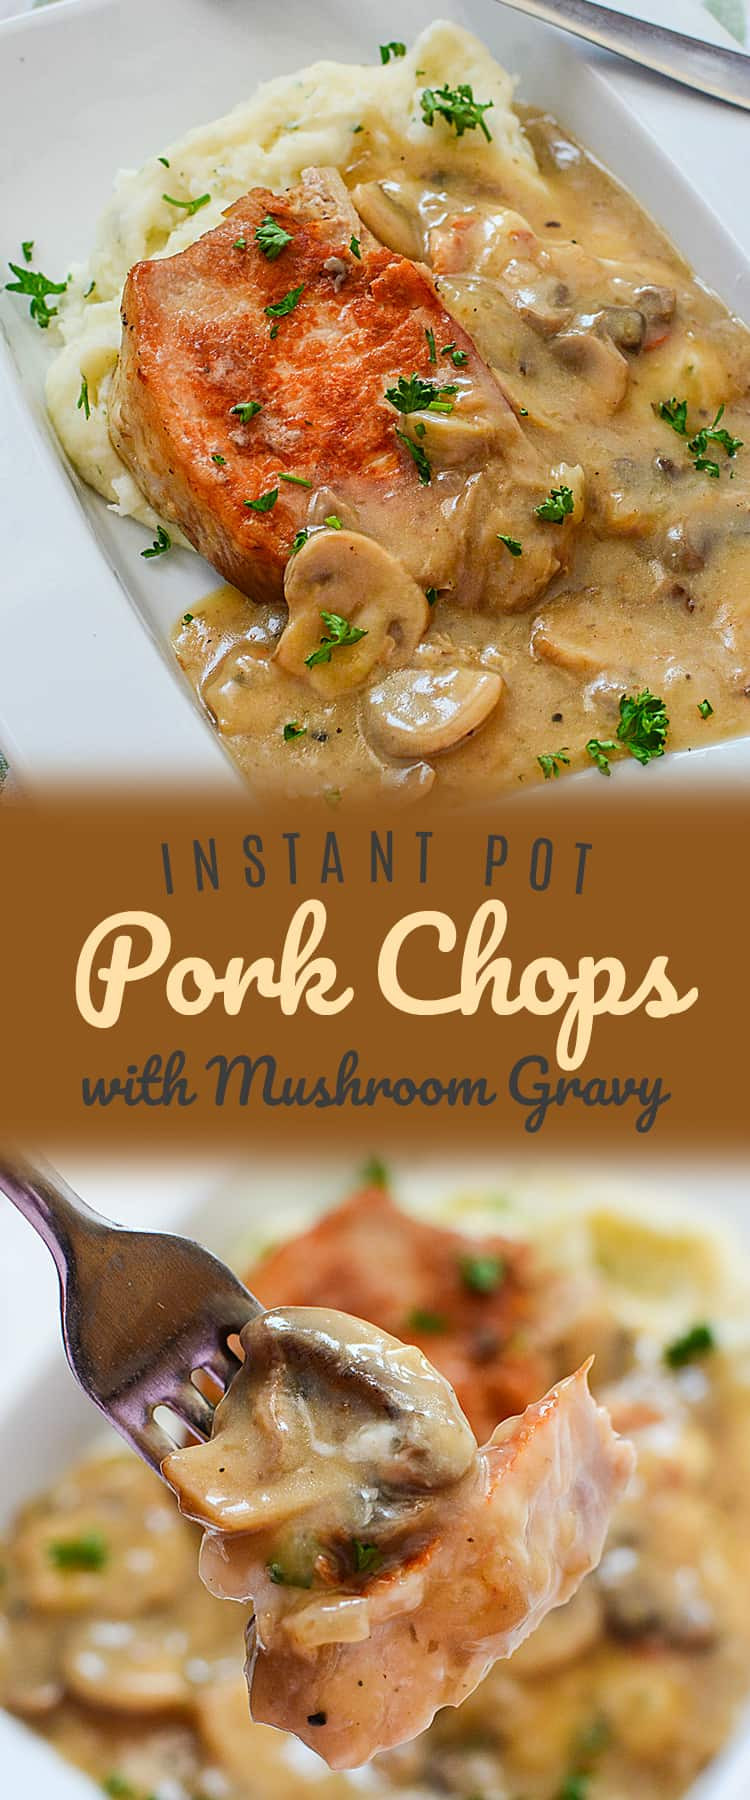 Instant Pot Lamb Chops Recipes
 Instant Pot Pork Chops with Mushroom Gravy